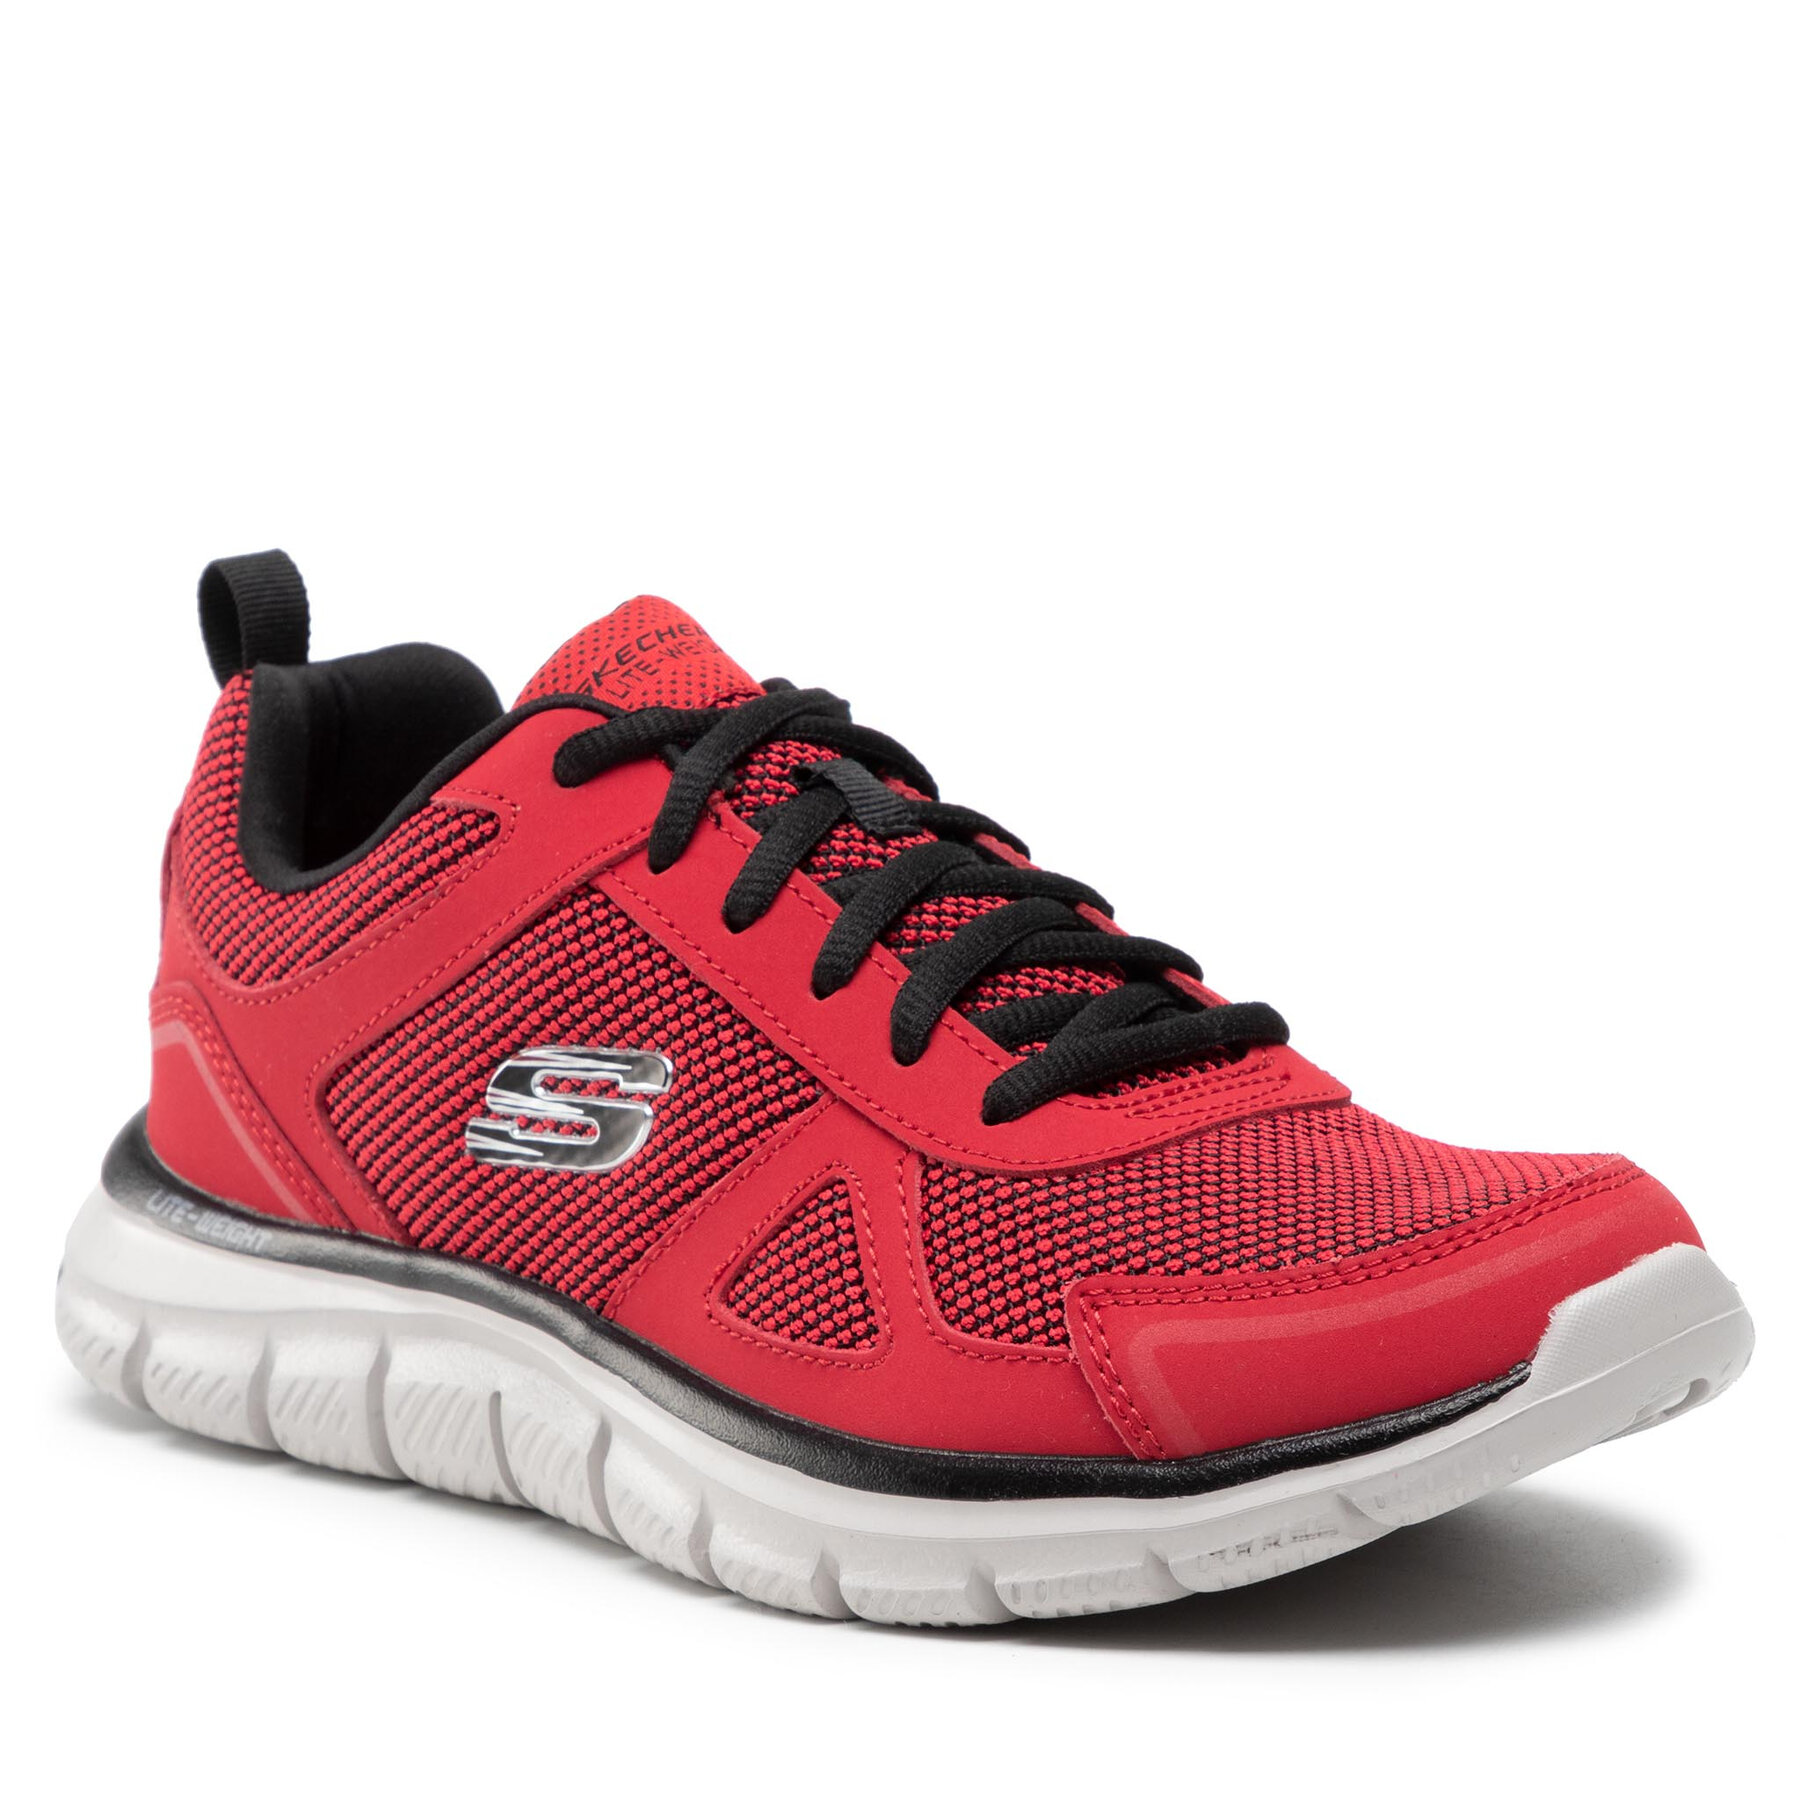 Pantofi Skechers Bucolo 52630/RDBK Red/Black 52630/RDBK imagine noua